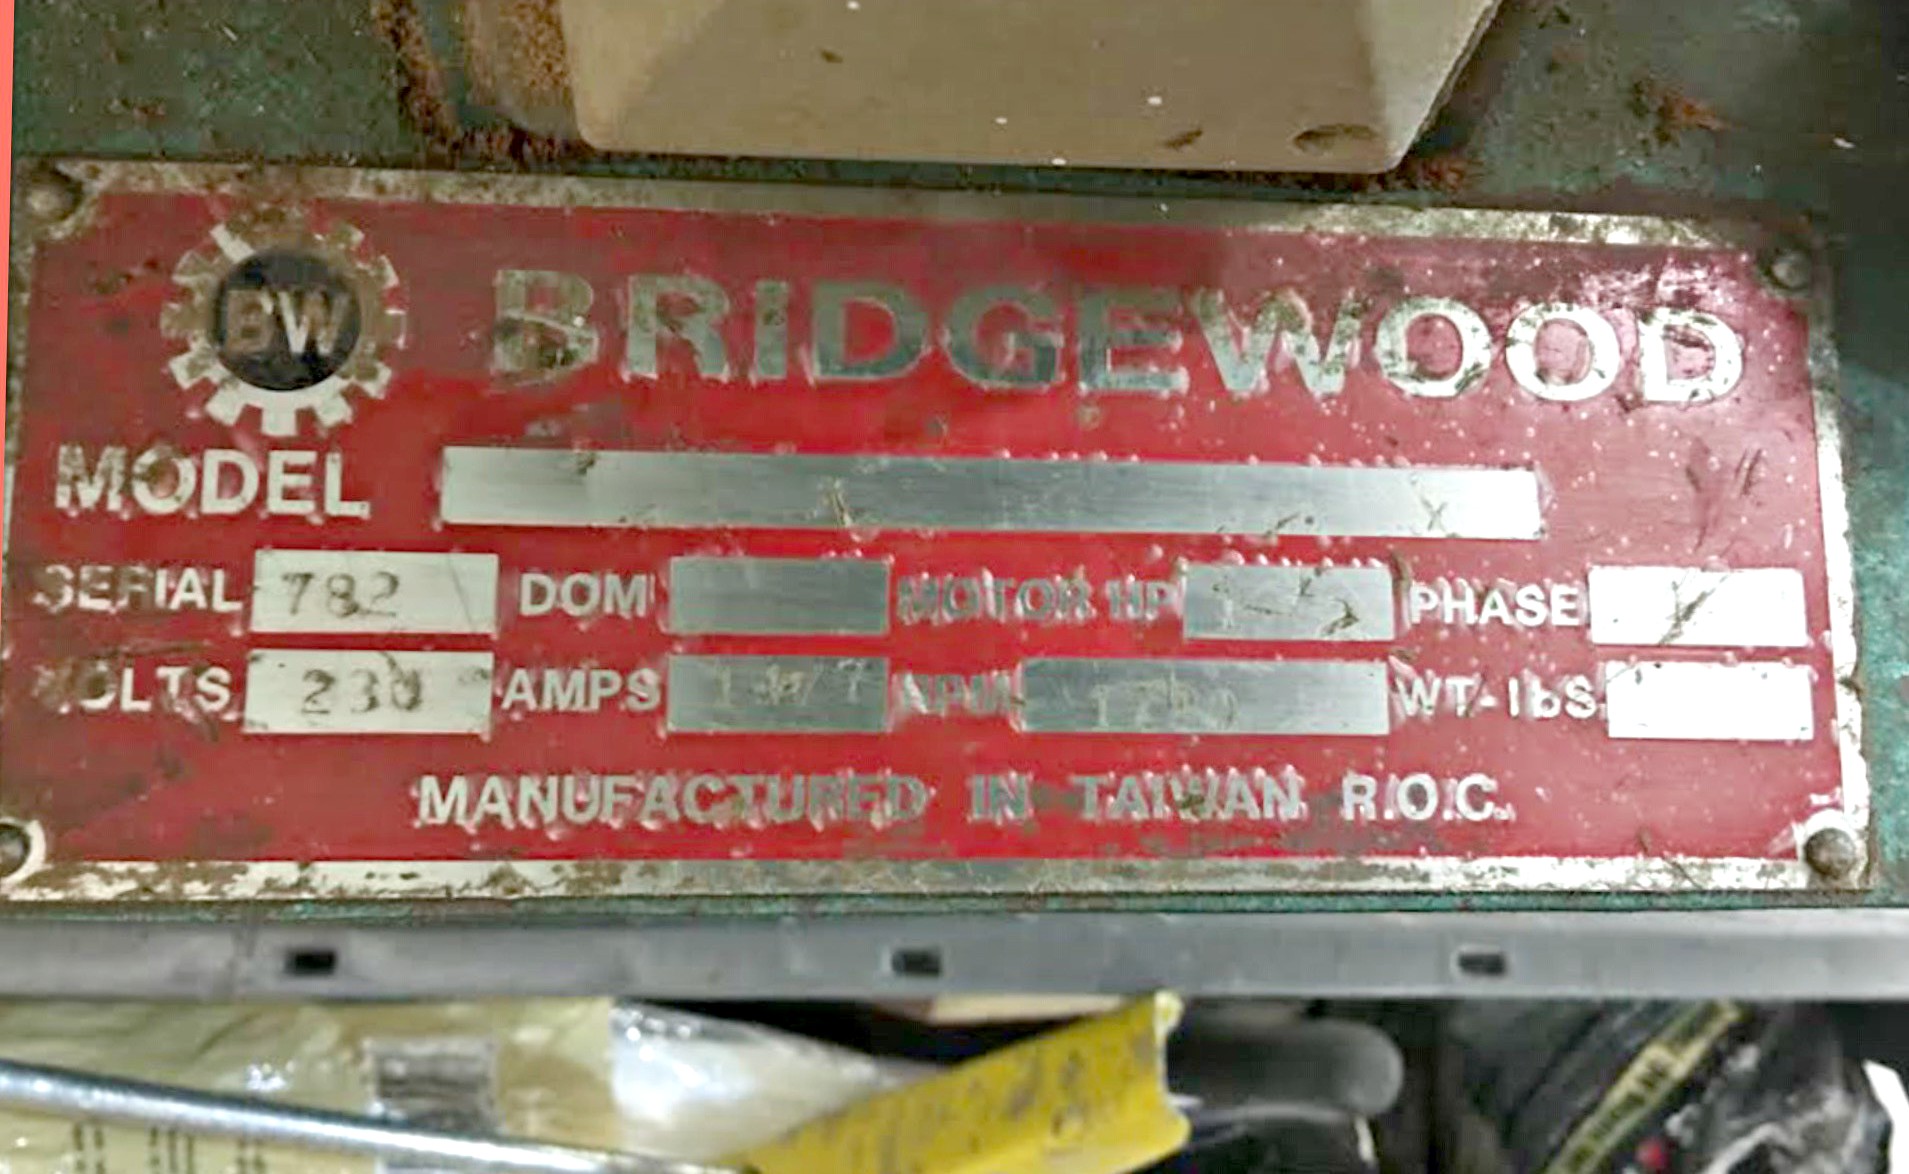 Bridgewood Oscillating Spindle Sander (Used) Item # UFE-635a  (NJ)